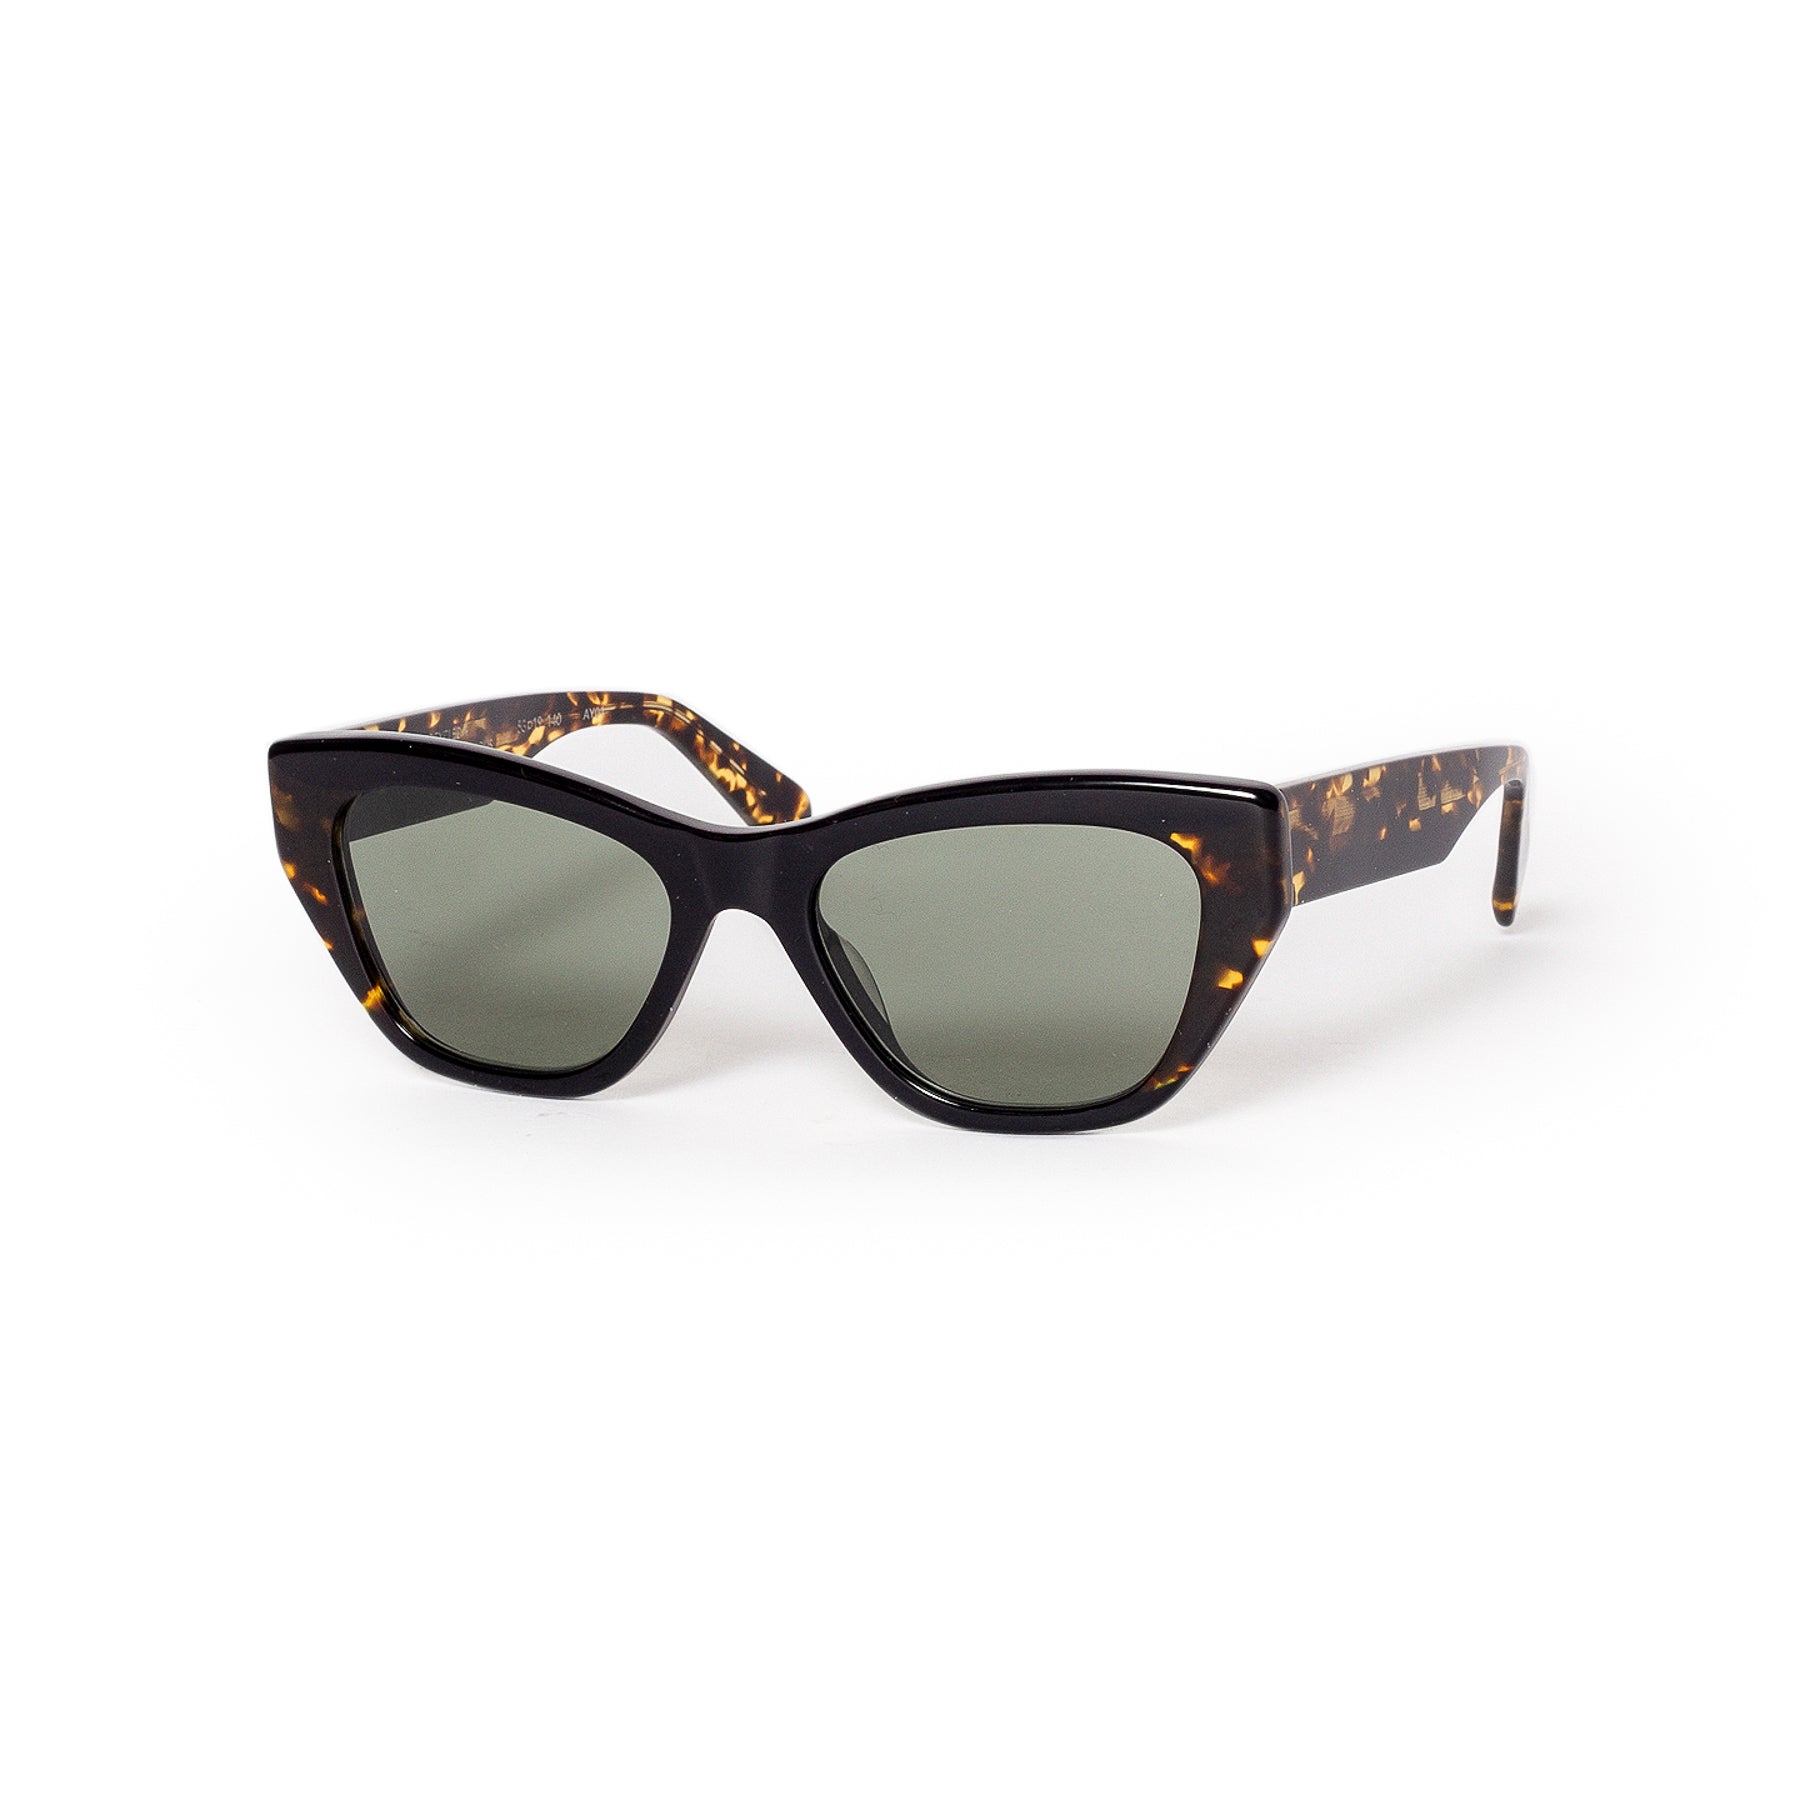 Carla Colour Ayres McQueen Black Tortoise Sunglasses